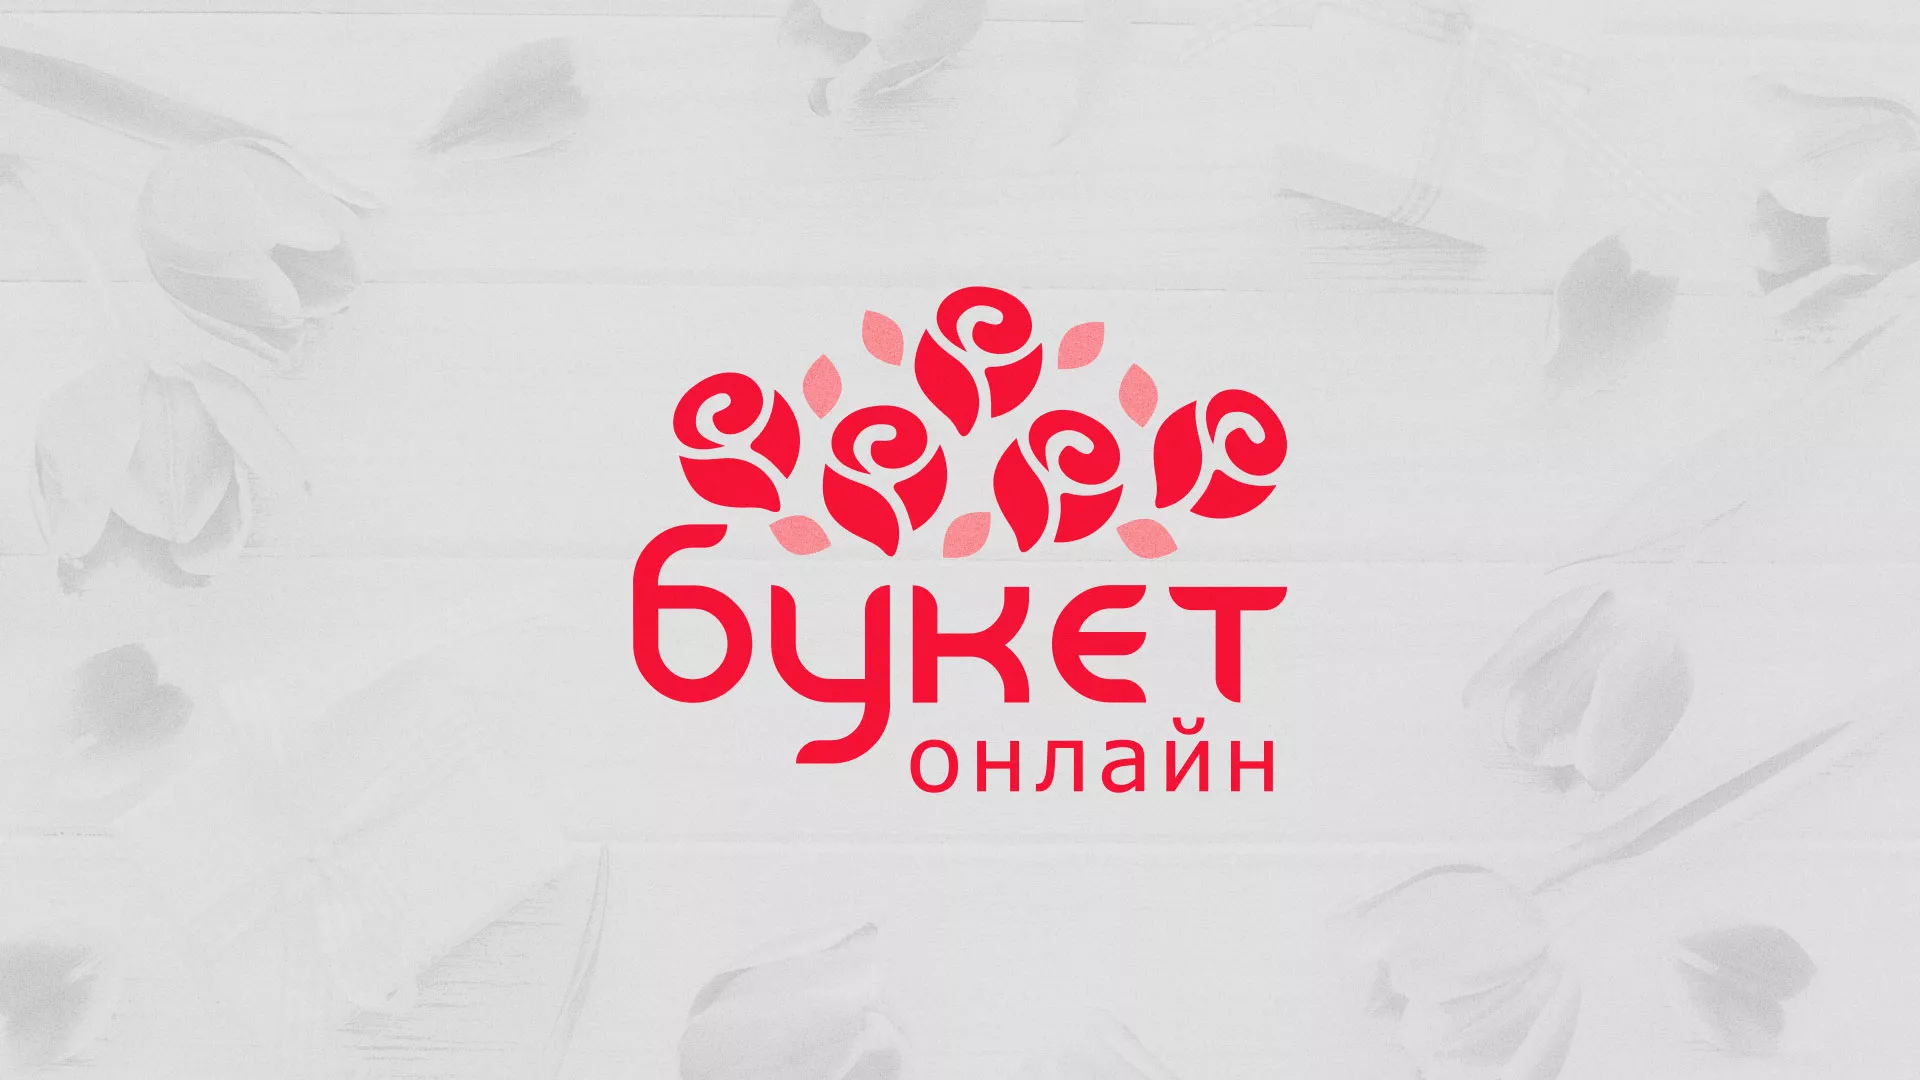 Создание интернет-магазина «Букет-онлайн» по цветам в Киржаче